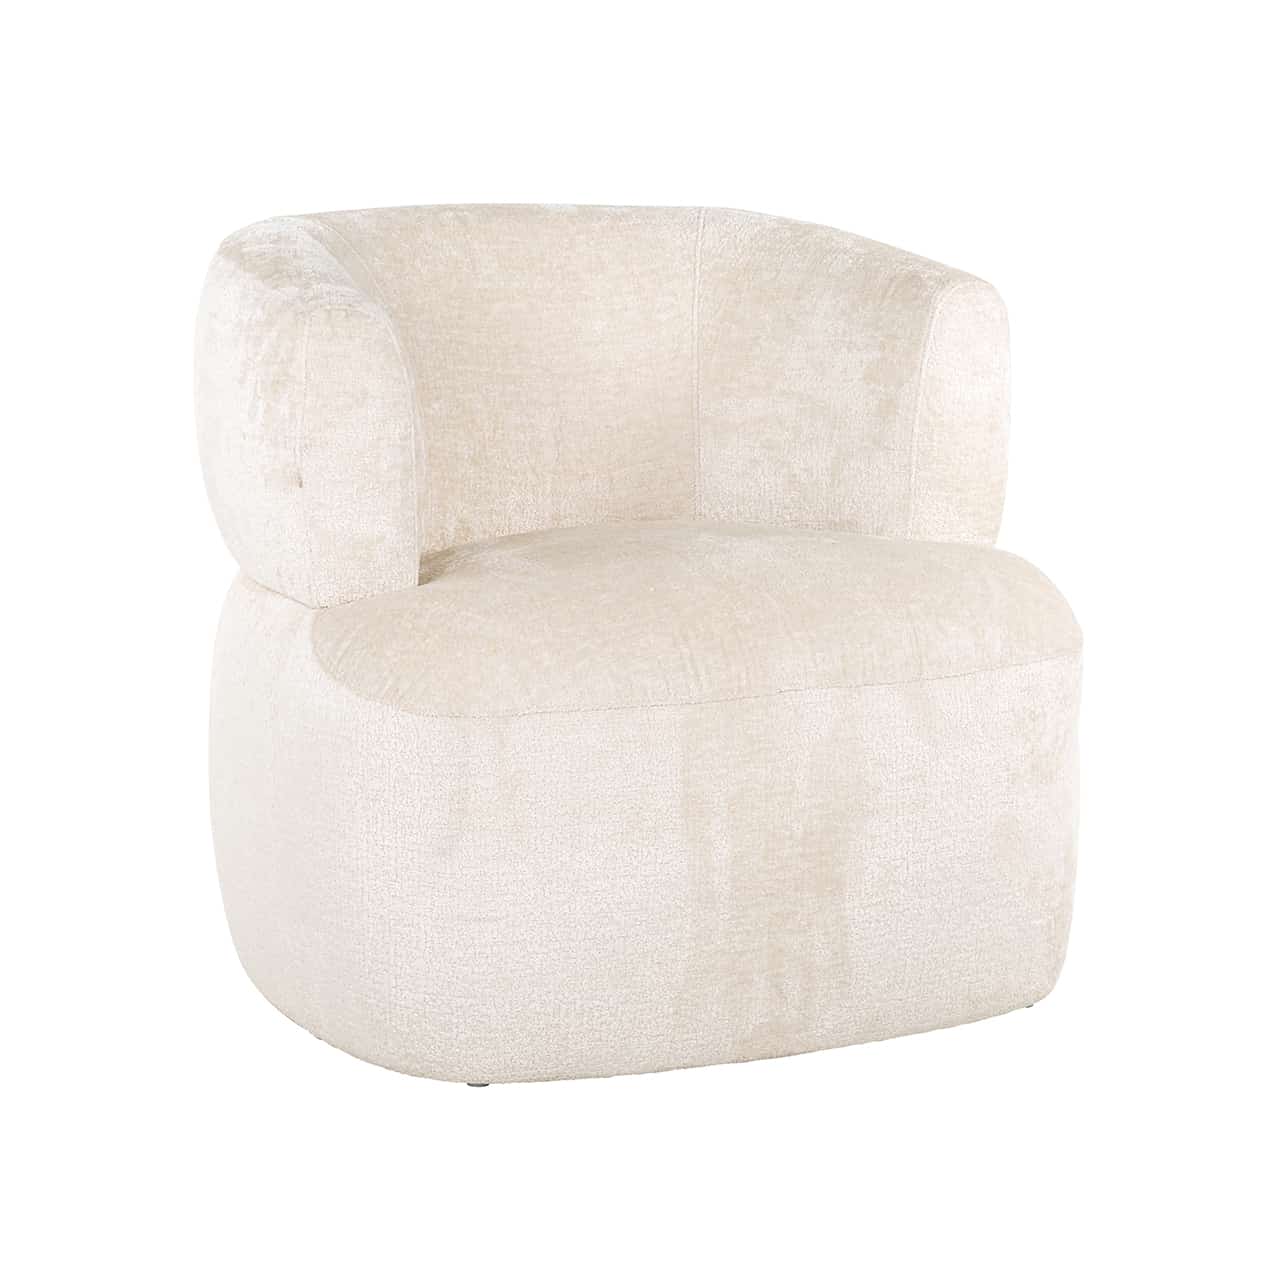 Moderner Sessel, bezogen mit weißer Chenille; auf einem dicken Polster eine ebenso dicke, halbrunde, durchlaufende Lehne.